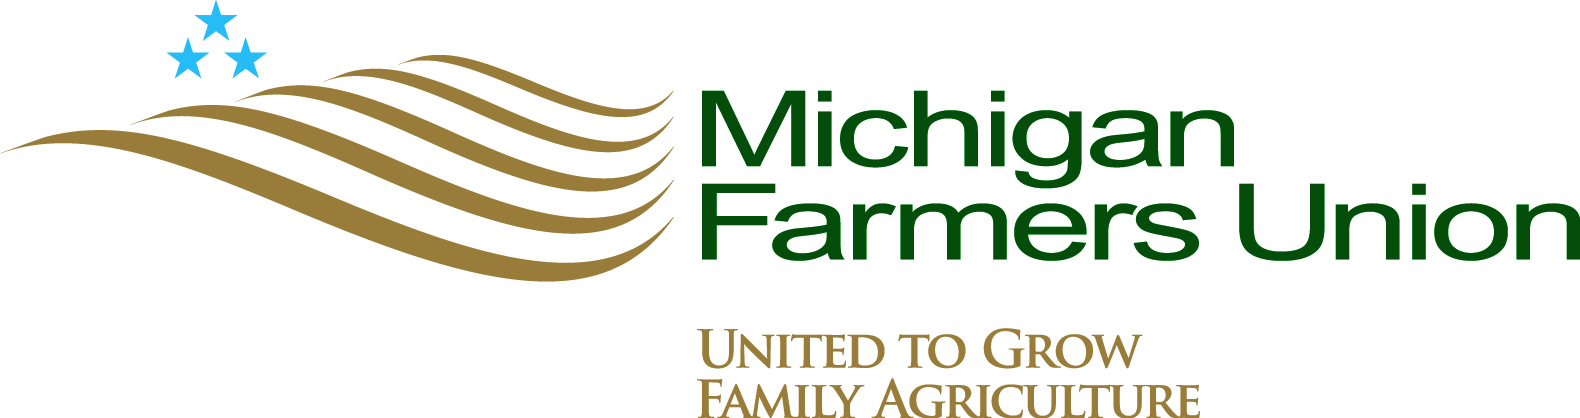 Michigan Farmers Union - 1 YR Youth Membership